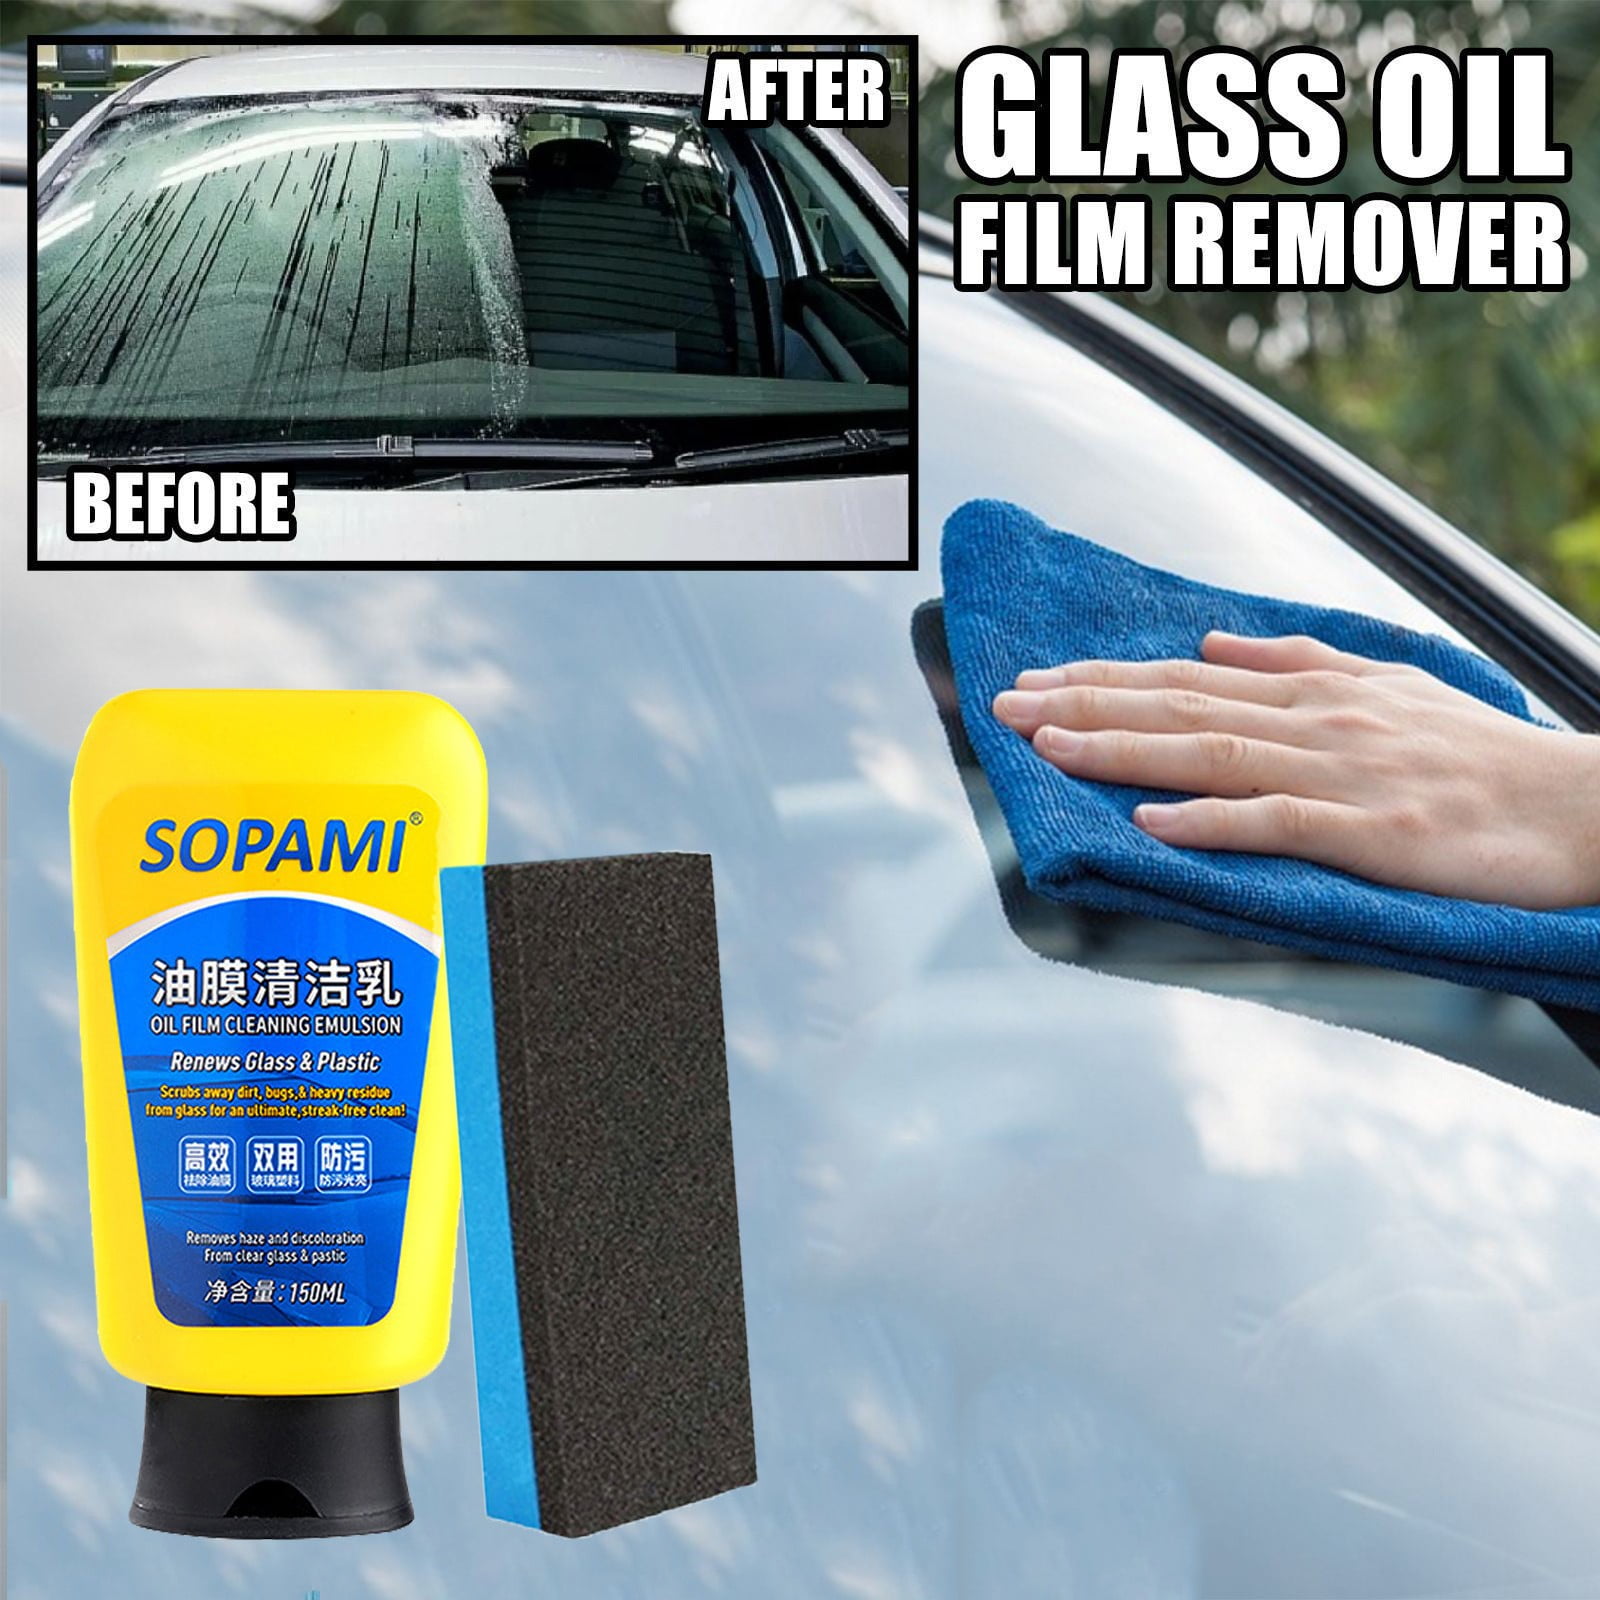  EZGHAR Sopami Car Coating Spray, Sopami Quick Effect Coating  Agent, Sopami Oil Film Emulsion Glass Cleaner, Car Glass Oil Film Cleaner,  Ceramic Coating for Cars (A-2PCS) : Automotive